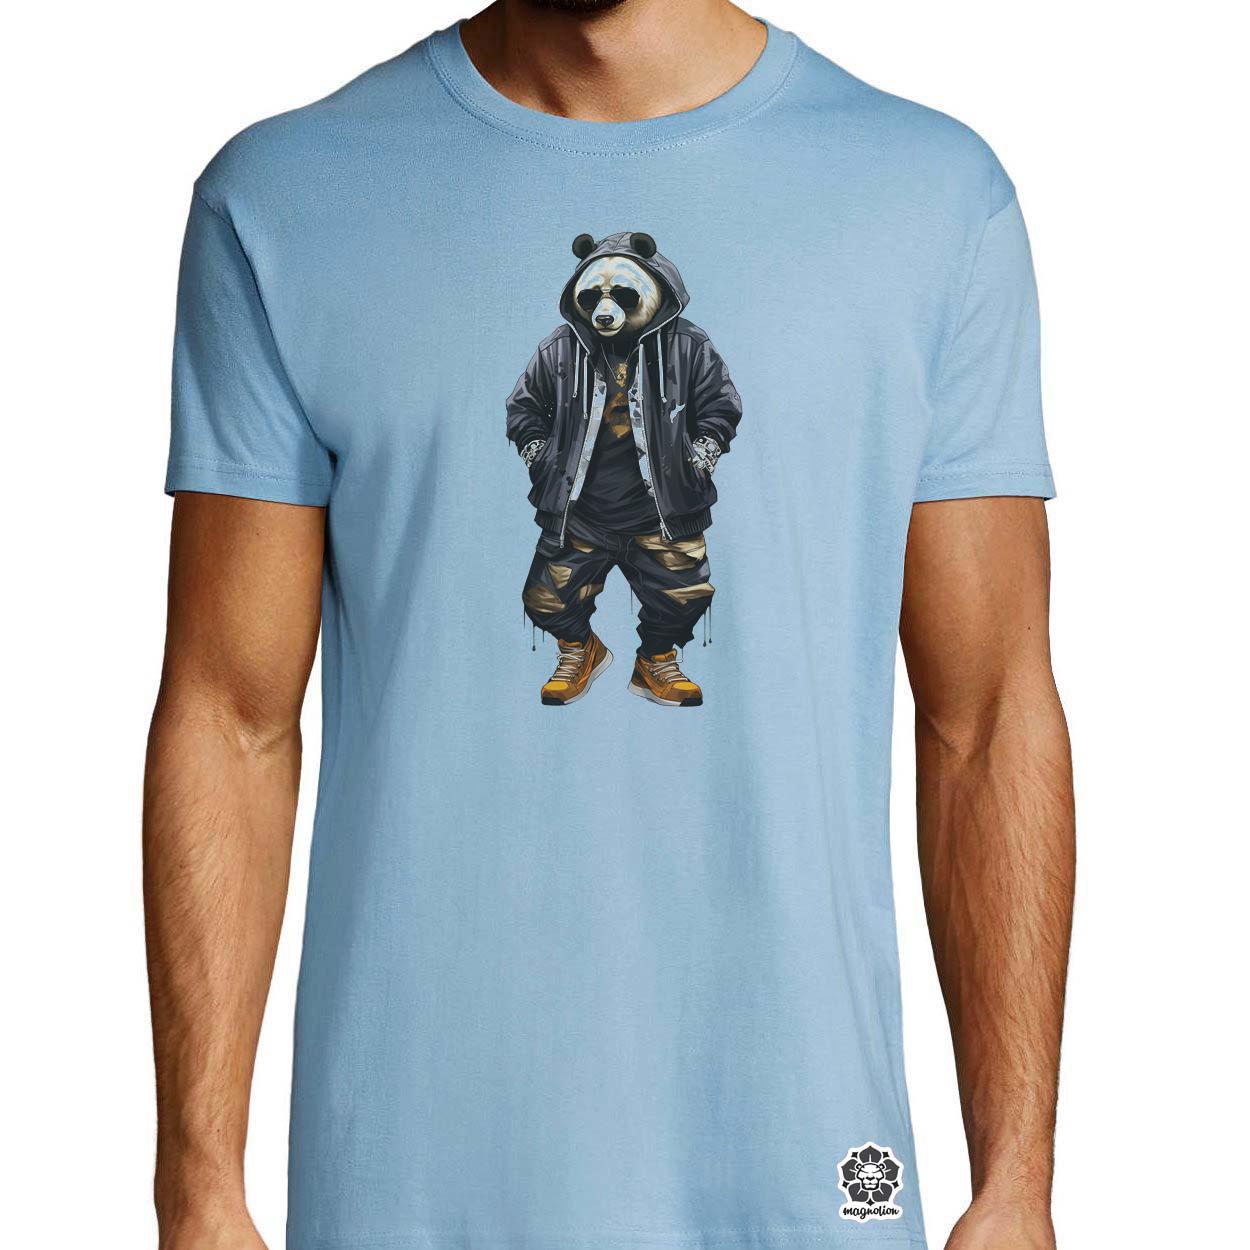 Hiphop panda v1